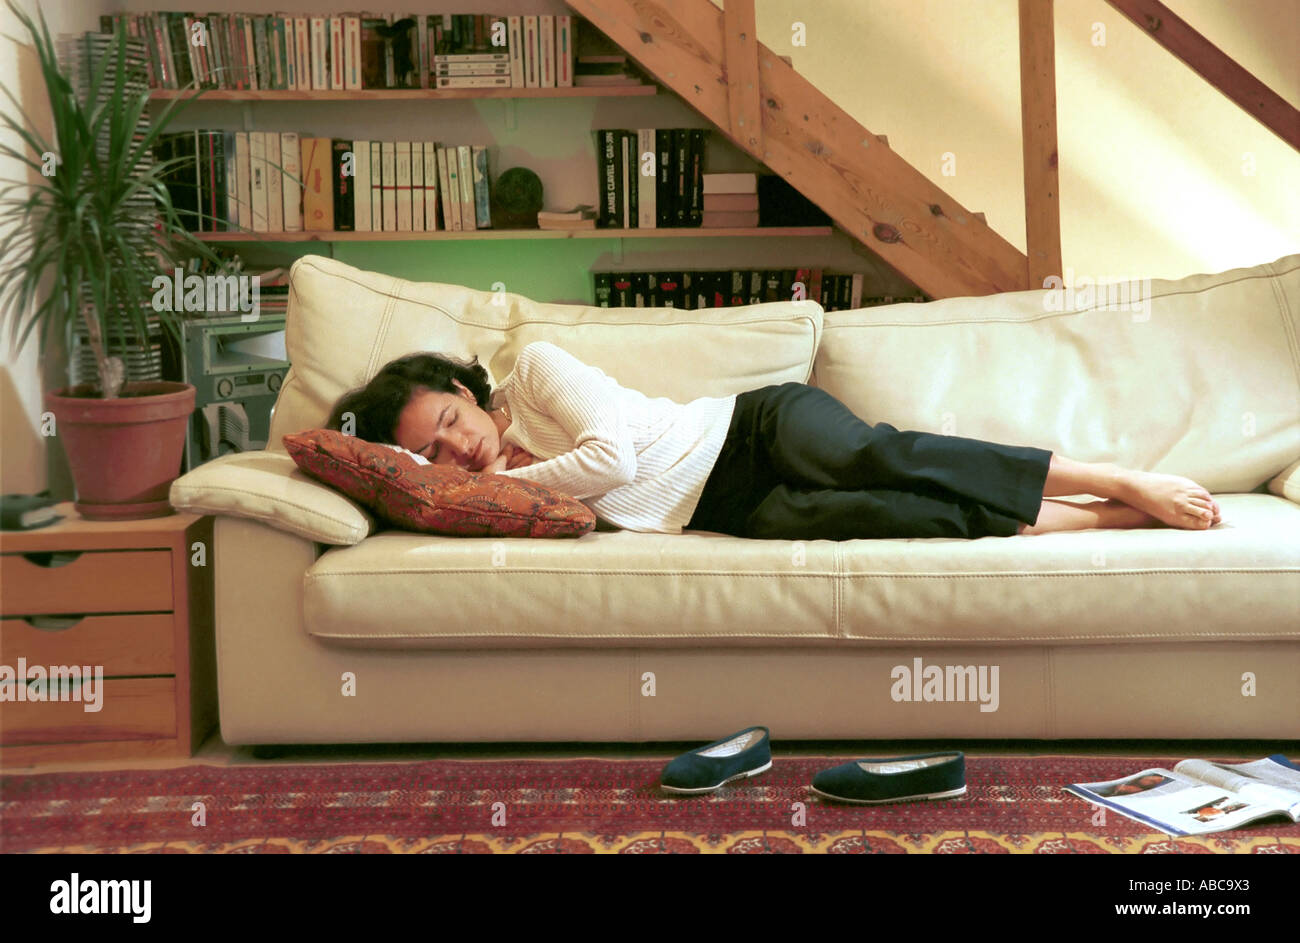 Frau liegt auf dem Sofa im Wohnzimmer schlafen Stockfotografie - Alamy